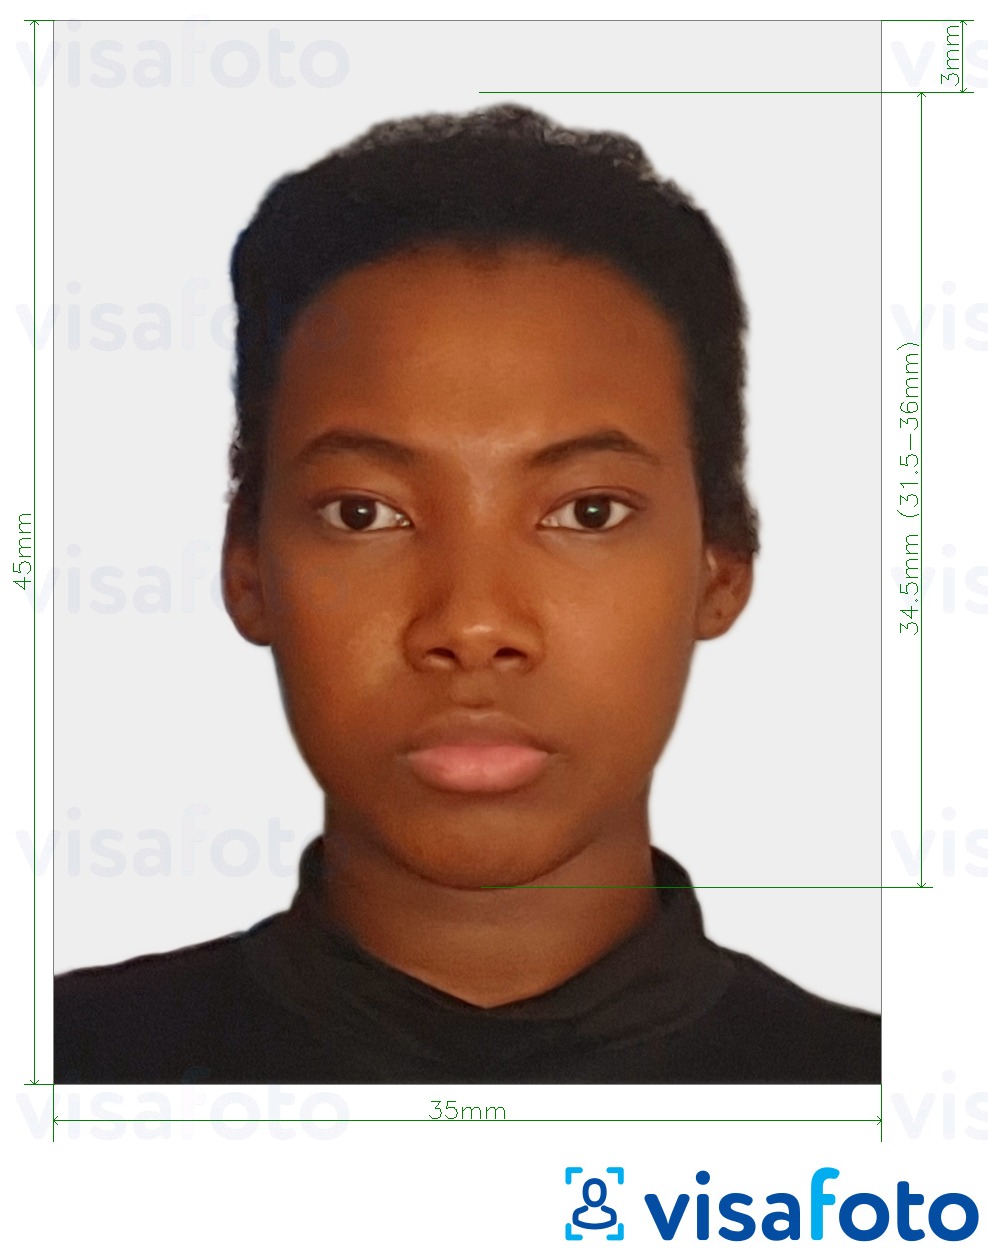 Príklad fotografie pre Togo vízum 4,5x3,5 cm (45x35mm) s presnou špecifikáciou veľkosti